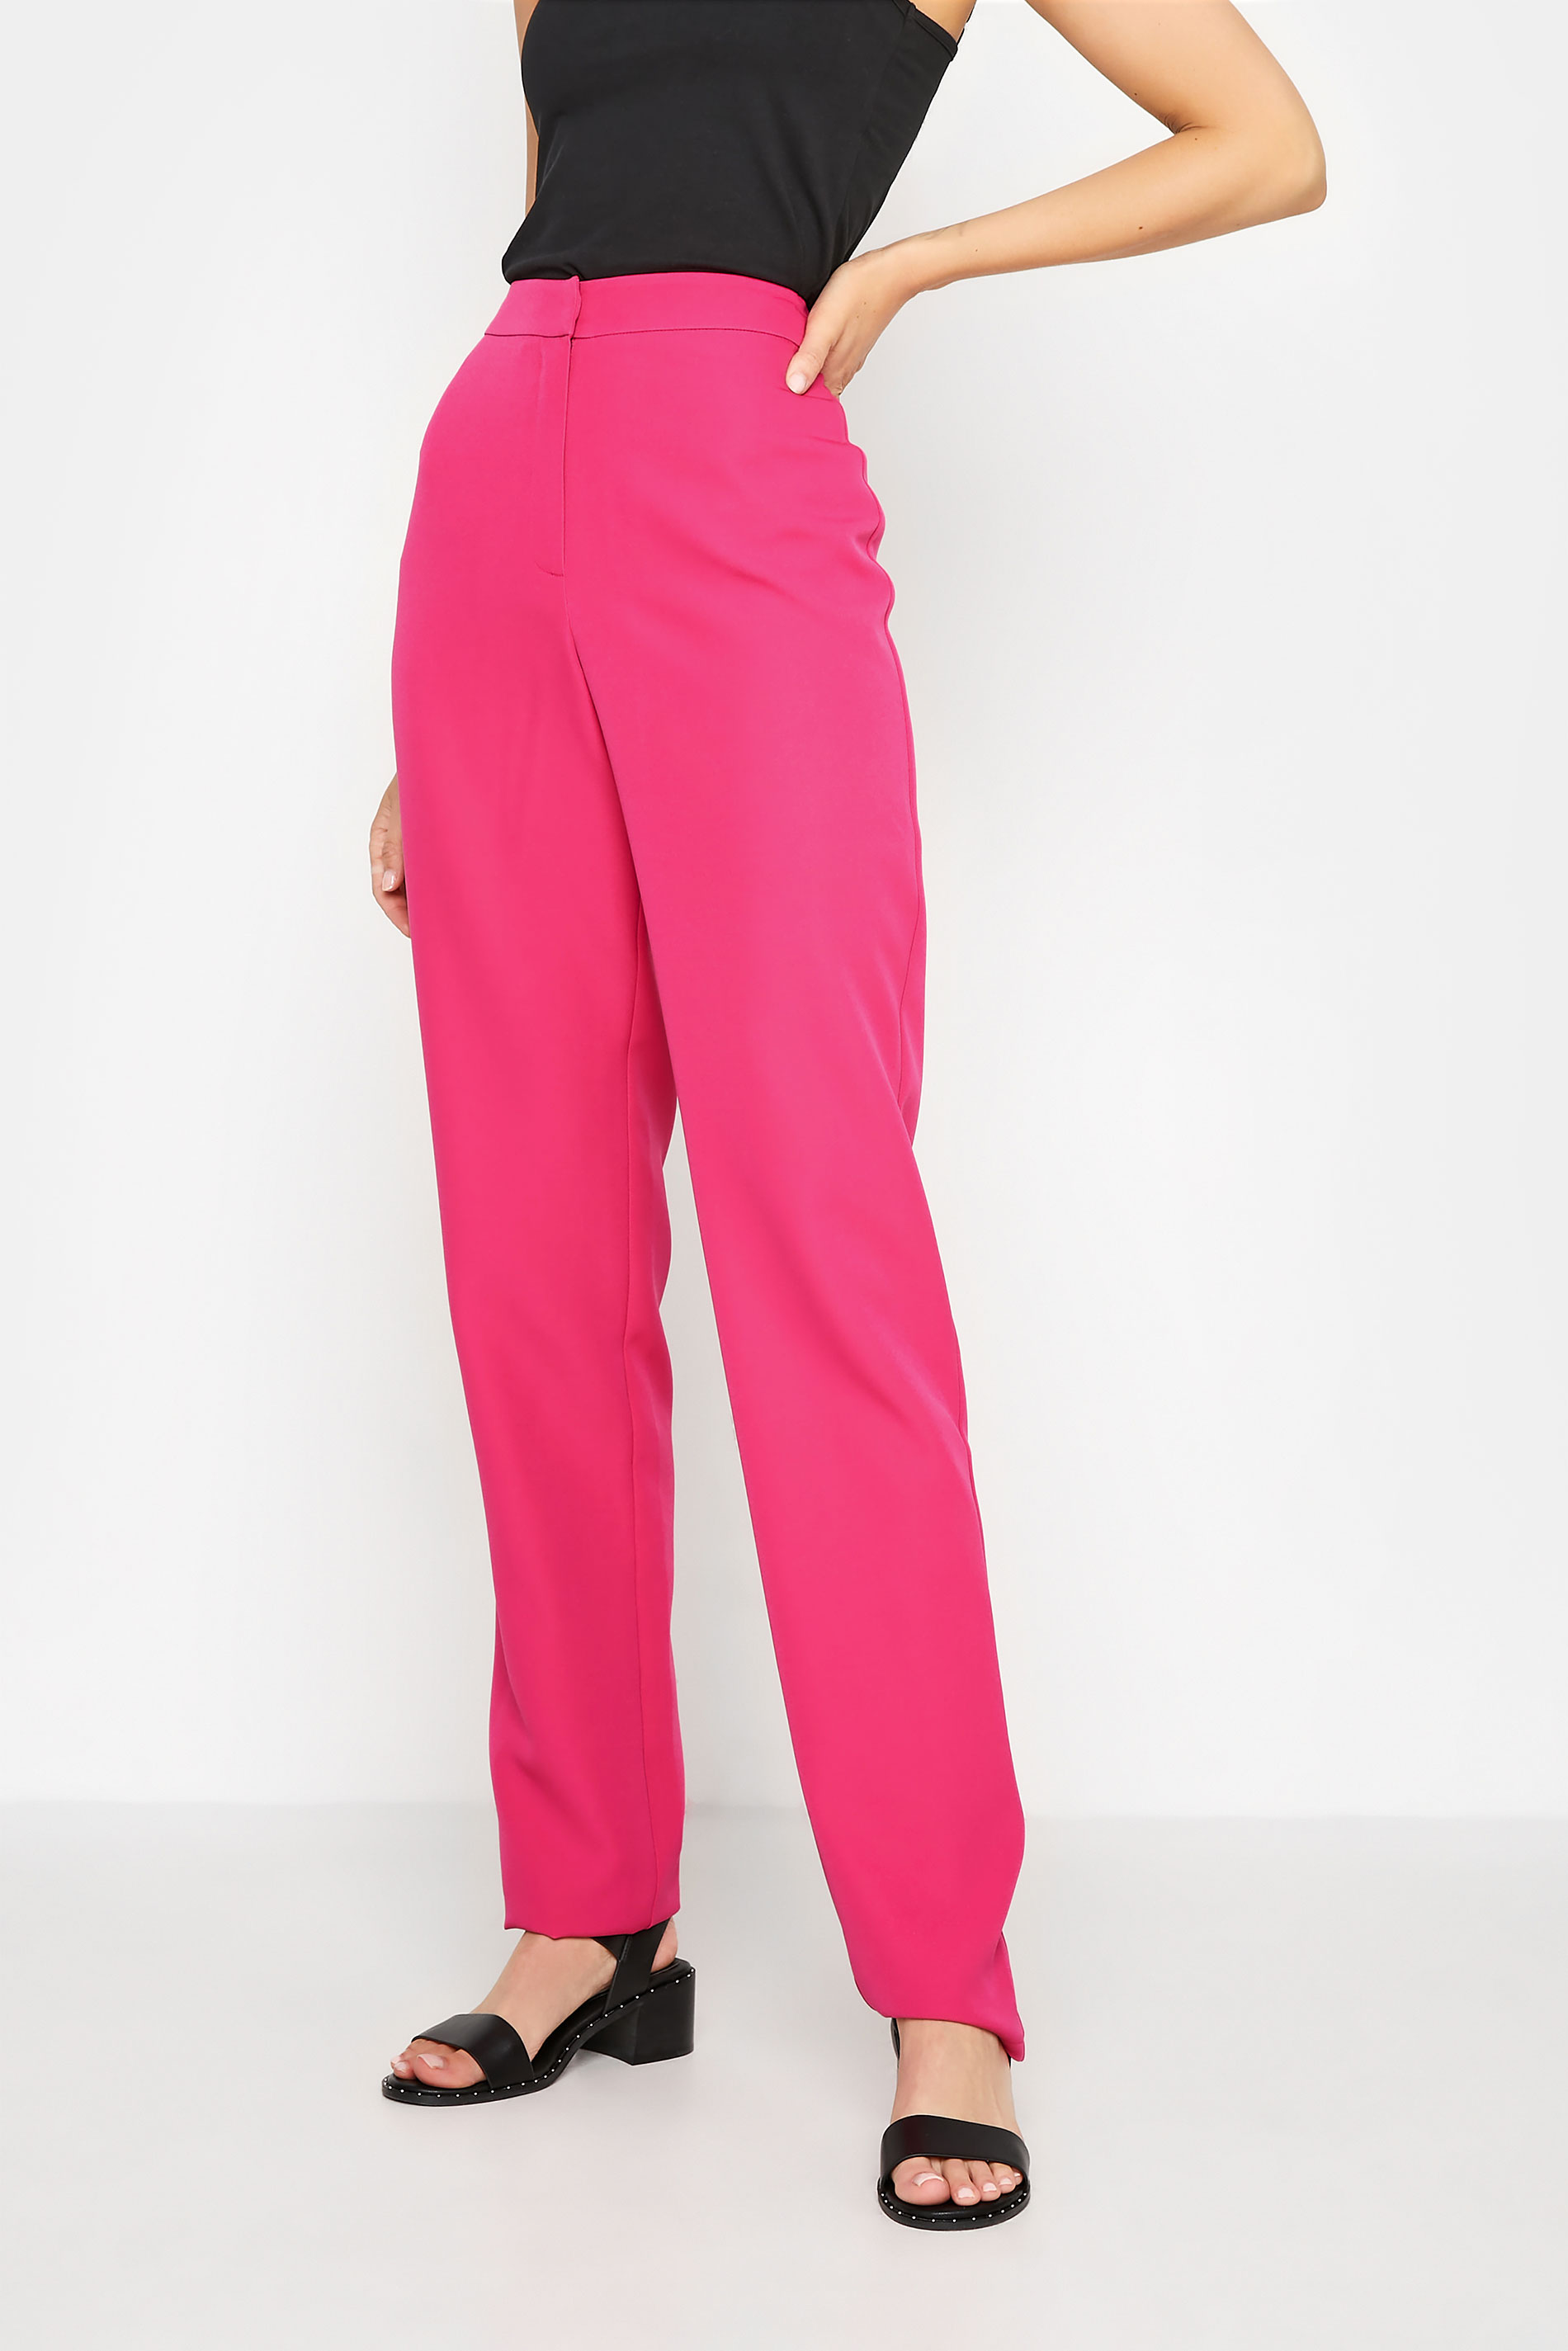 LTS Tall Women's Hot Pink Scuba Slim Leg Trousers | Long Tall Sally 1